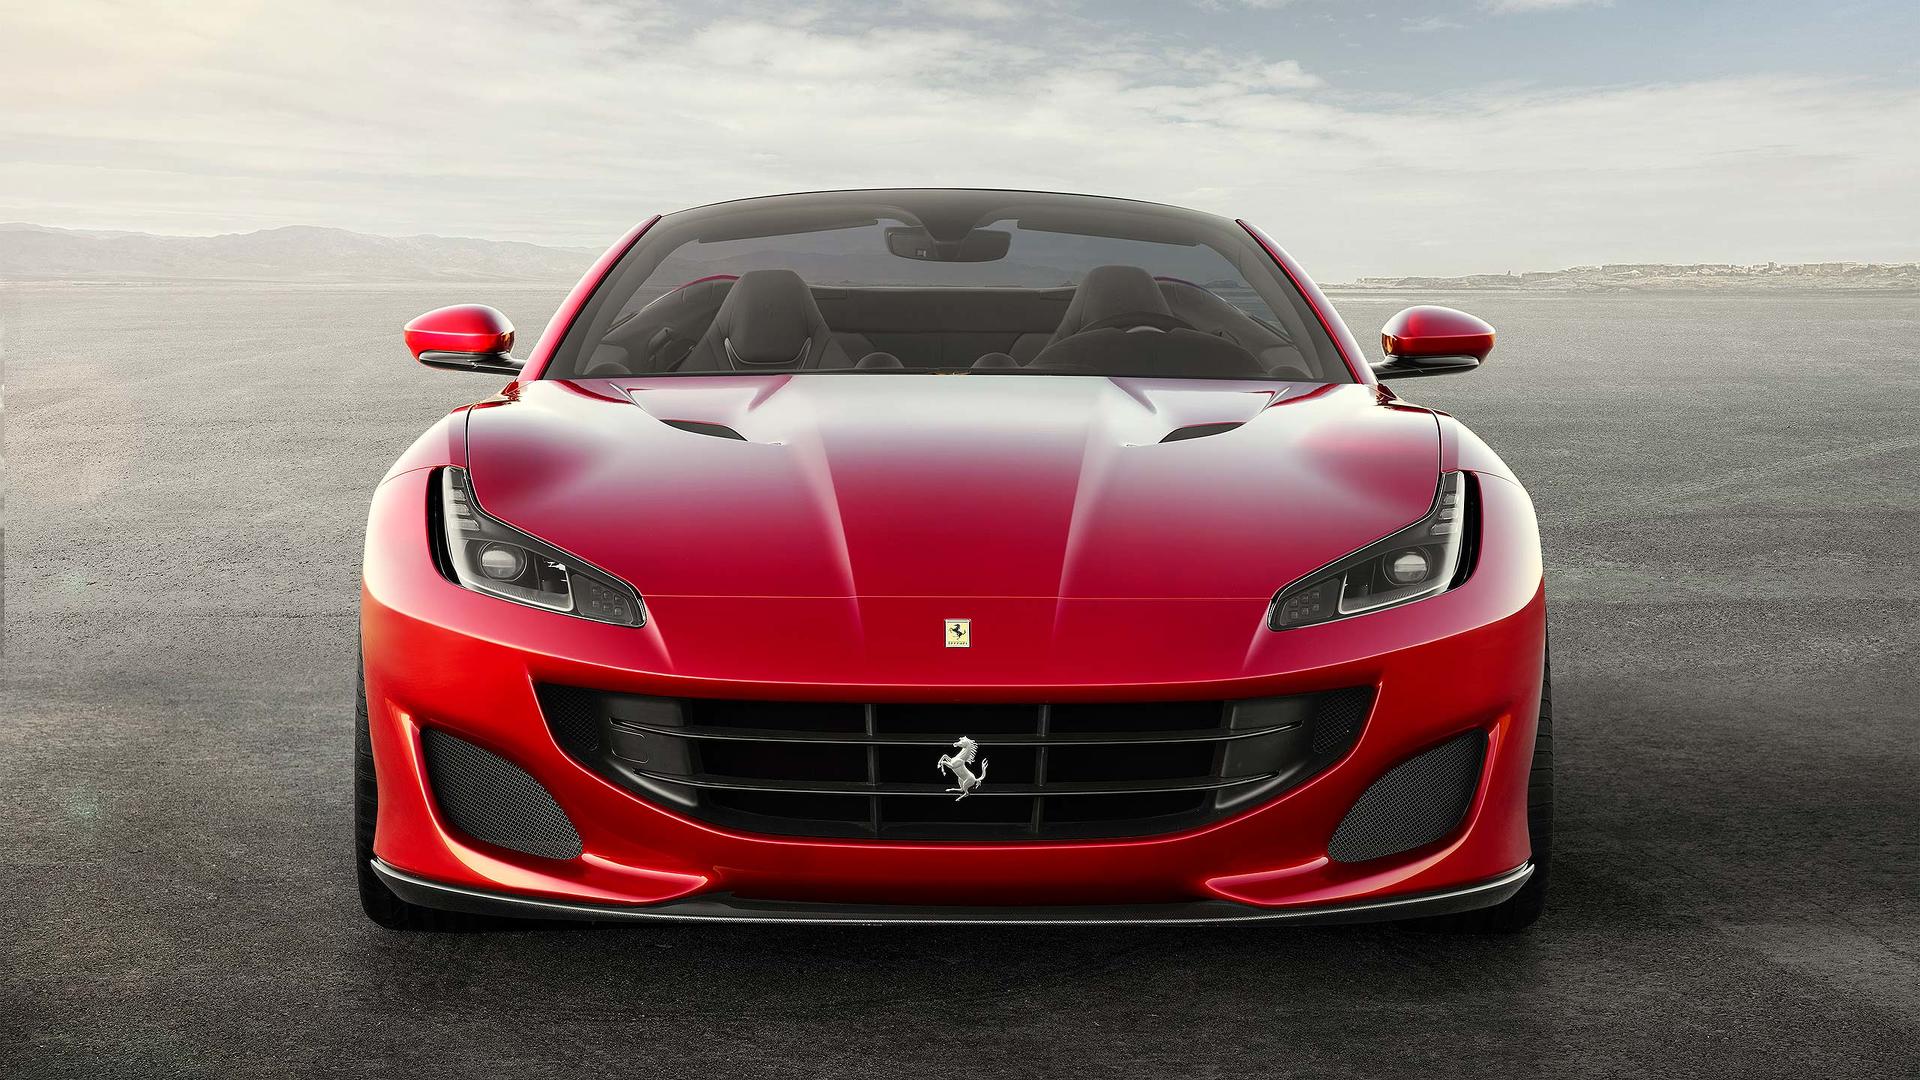 Oficial: Ferrari Portofino, ¡adiós al California T!